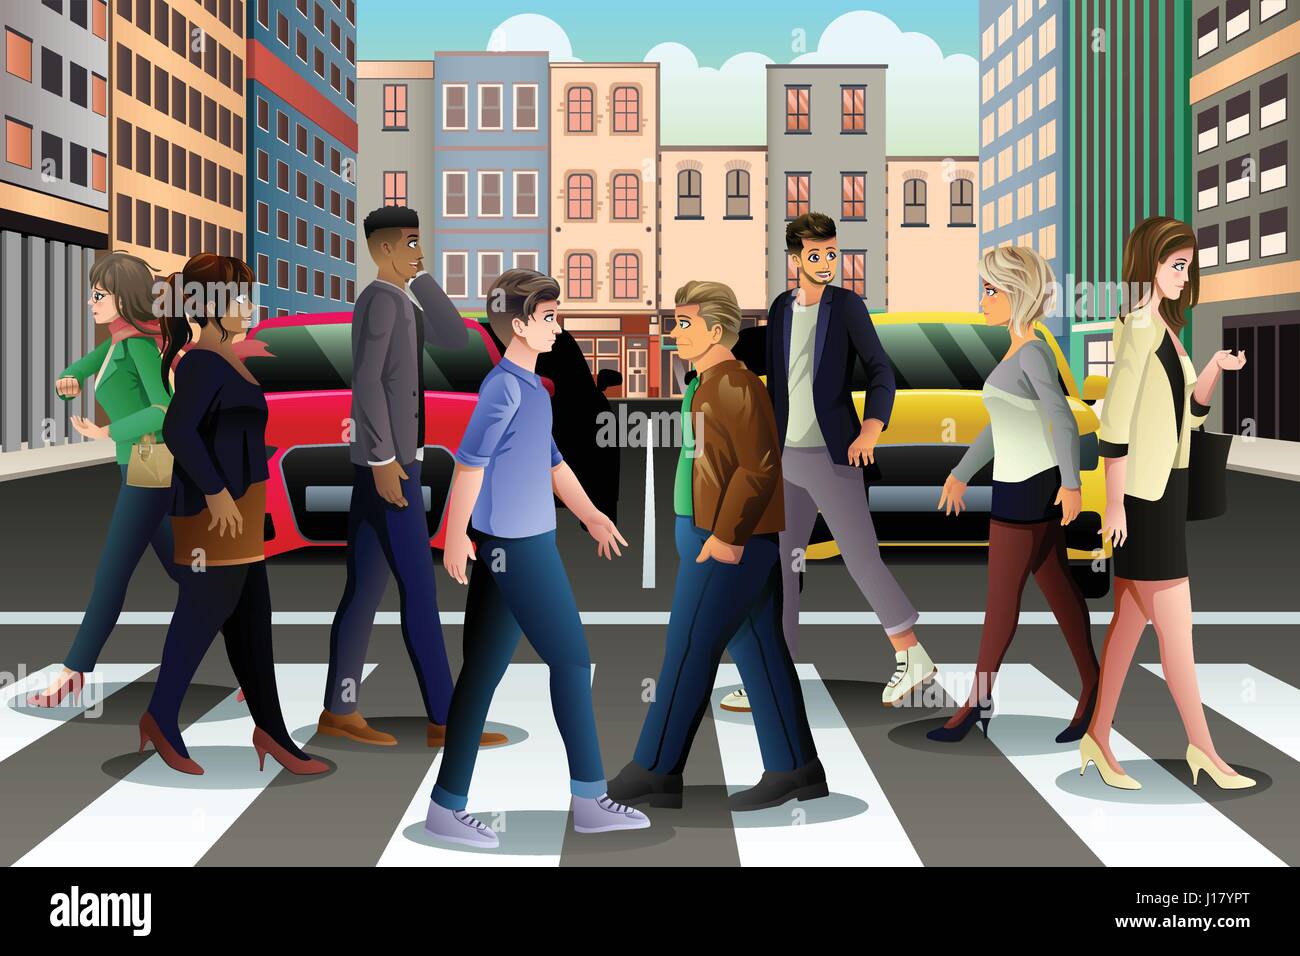 Un vecteur illustration de la ville de gens qui traversent la rue aux heures de pointe Illustration de Vecteur